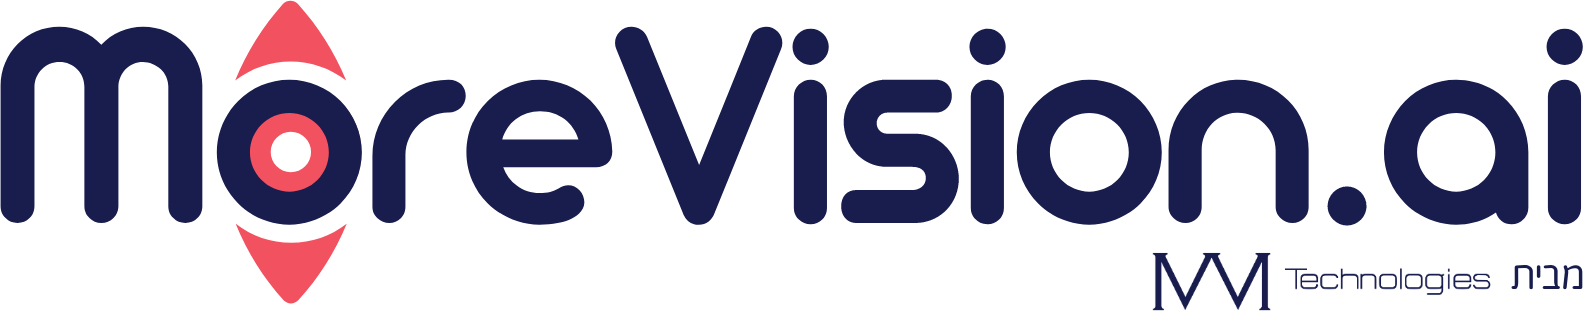 morevision-logo-wide-dark